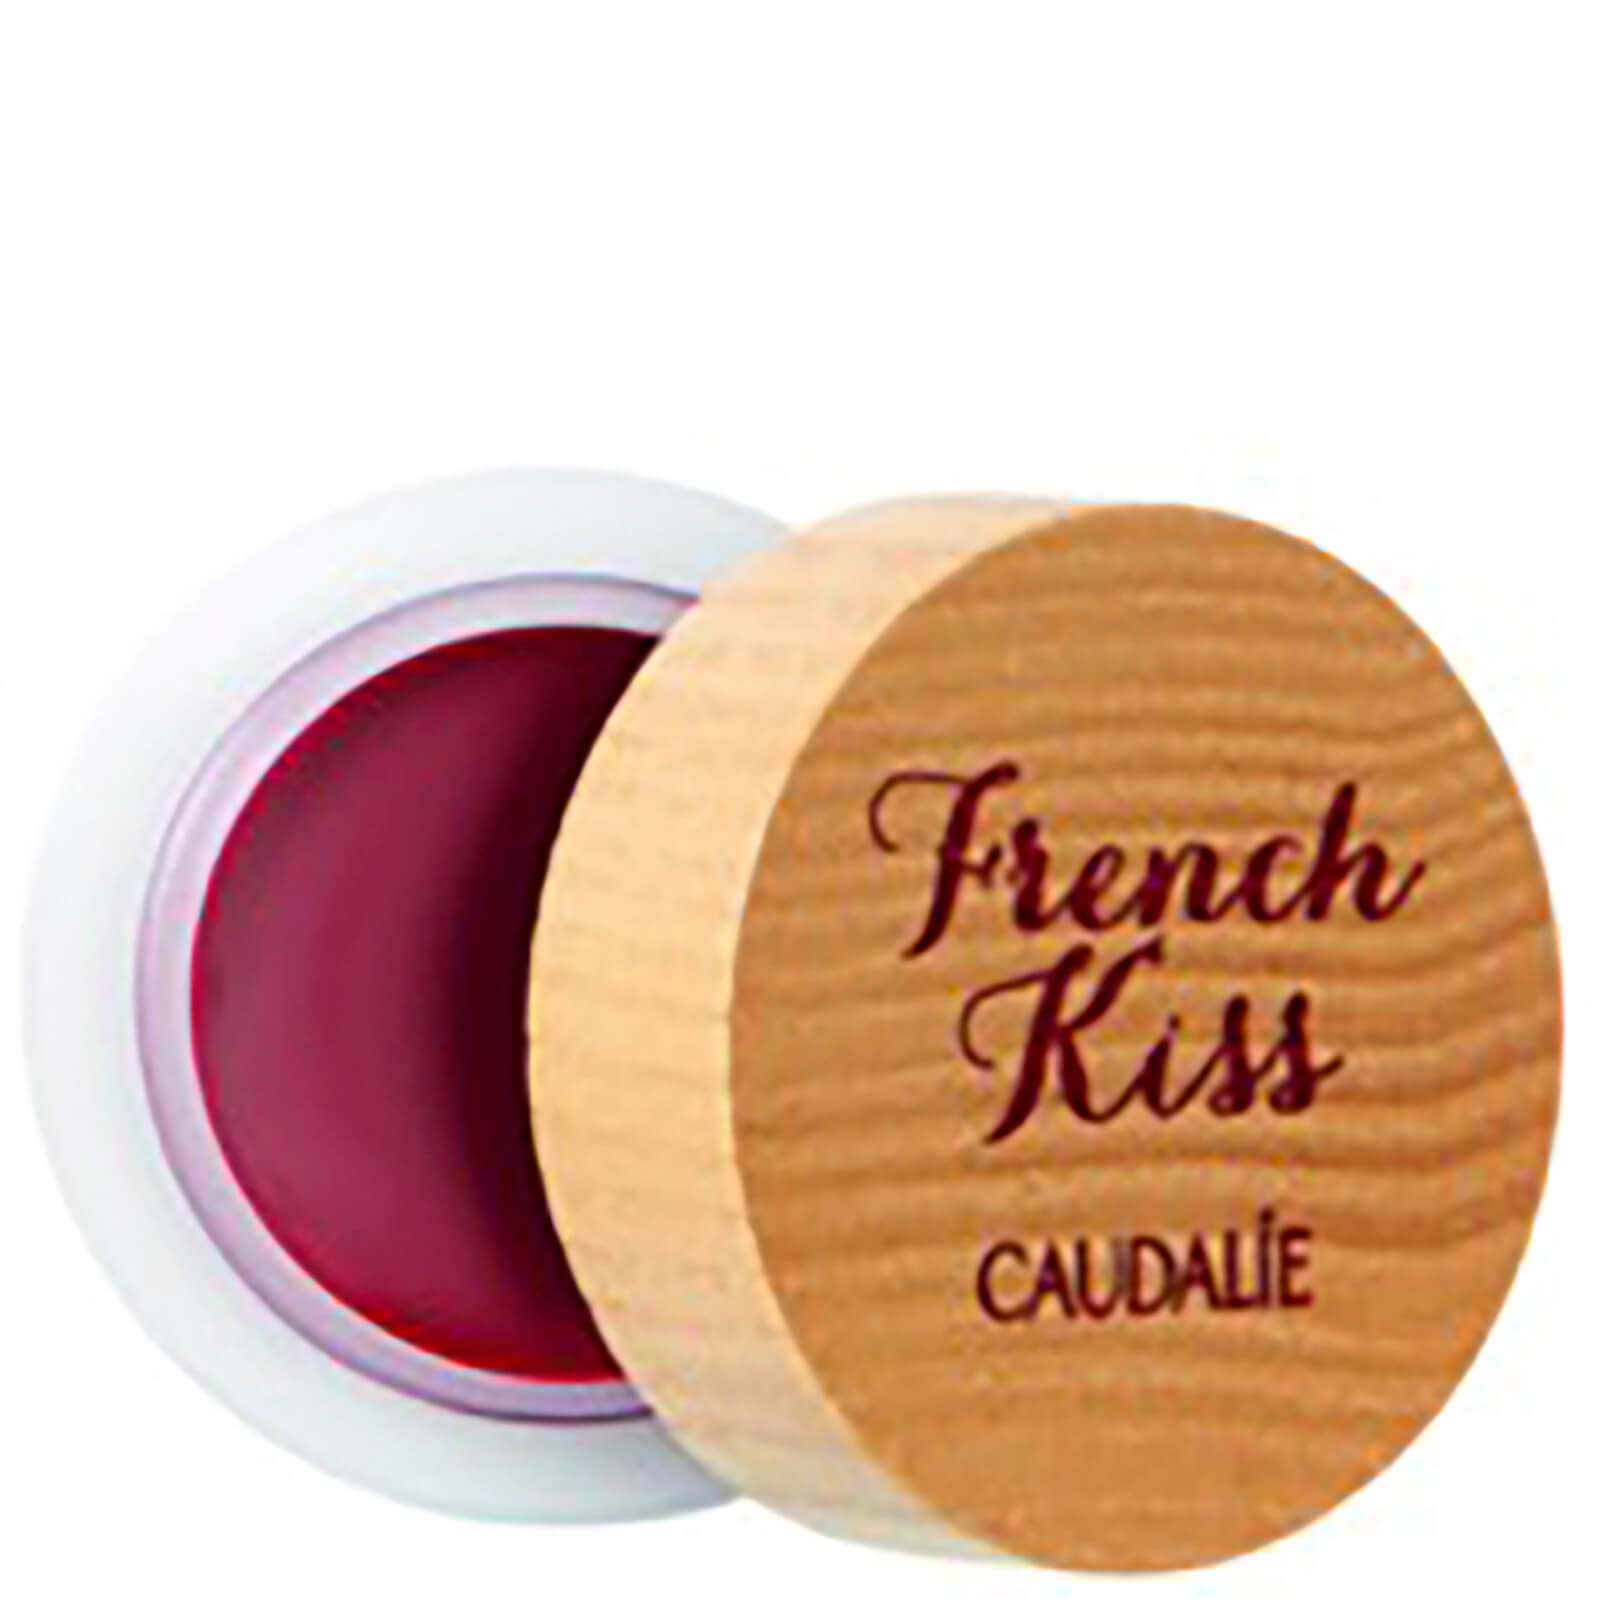 Bálsamo labial French Kiss Tinted de Caudalie - Addiction